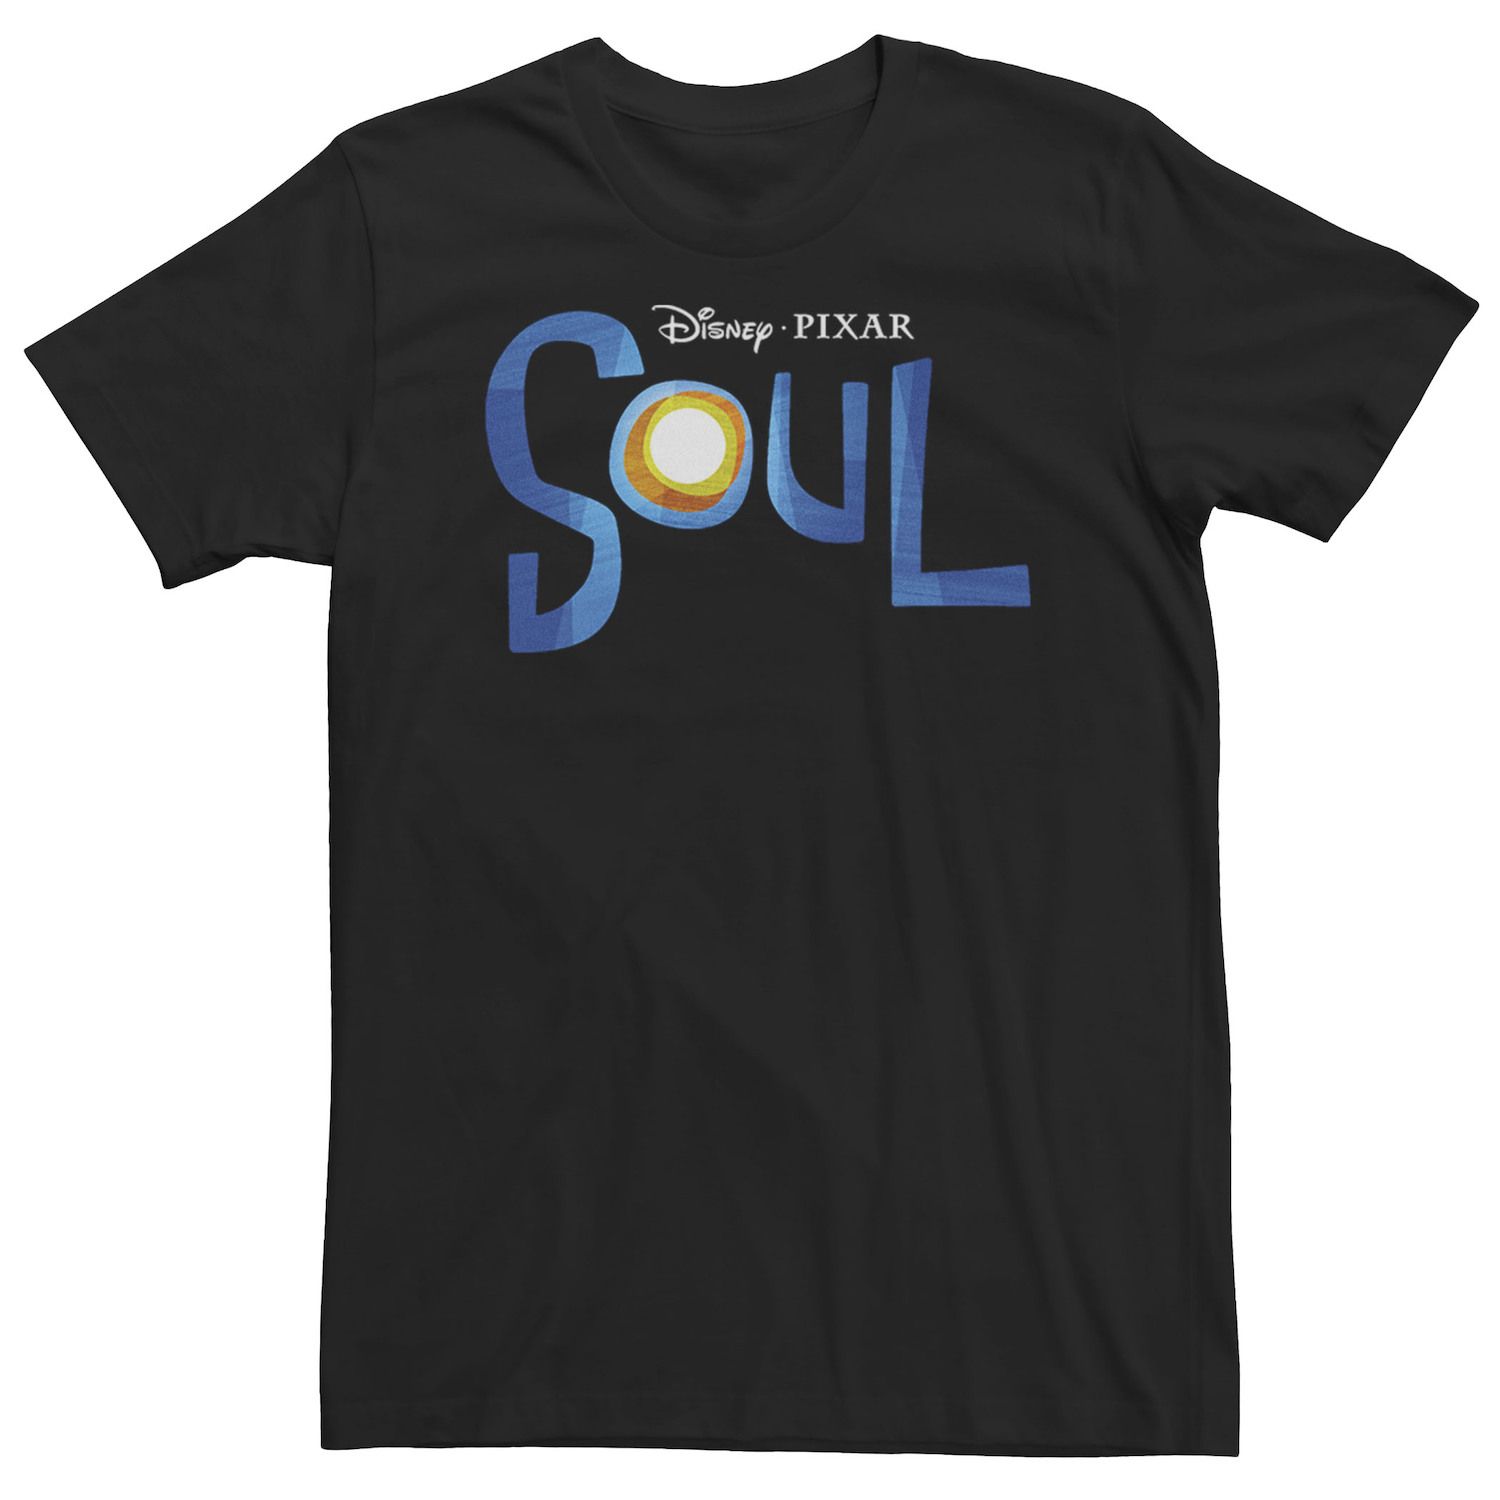 Мужская футболка с логотипом Disney/Pixar Soul Disney / Pixar мужская футболка с логотипом фильма хороший динозавр disney pixar